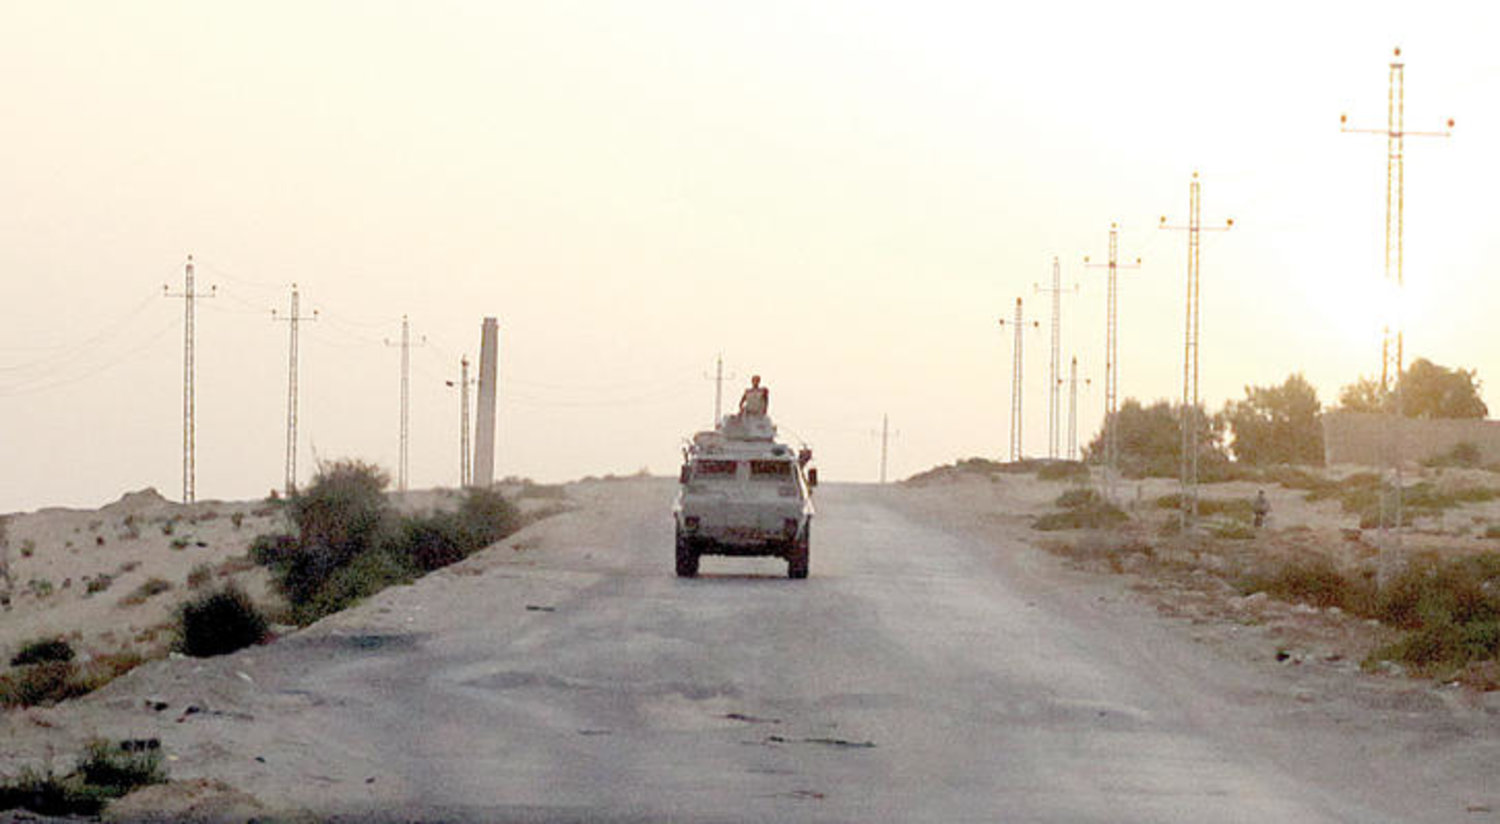 آلية عسكرية شمال سيناء المصرية لتأمين المنطقة من المتطرفين (رويترز)